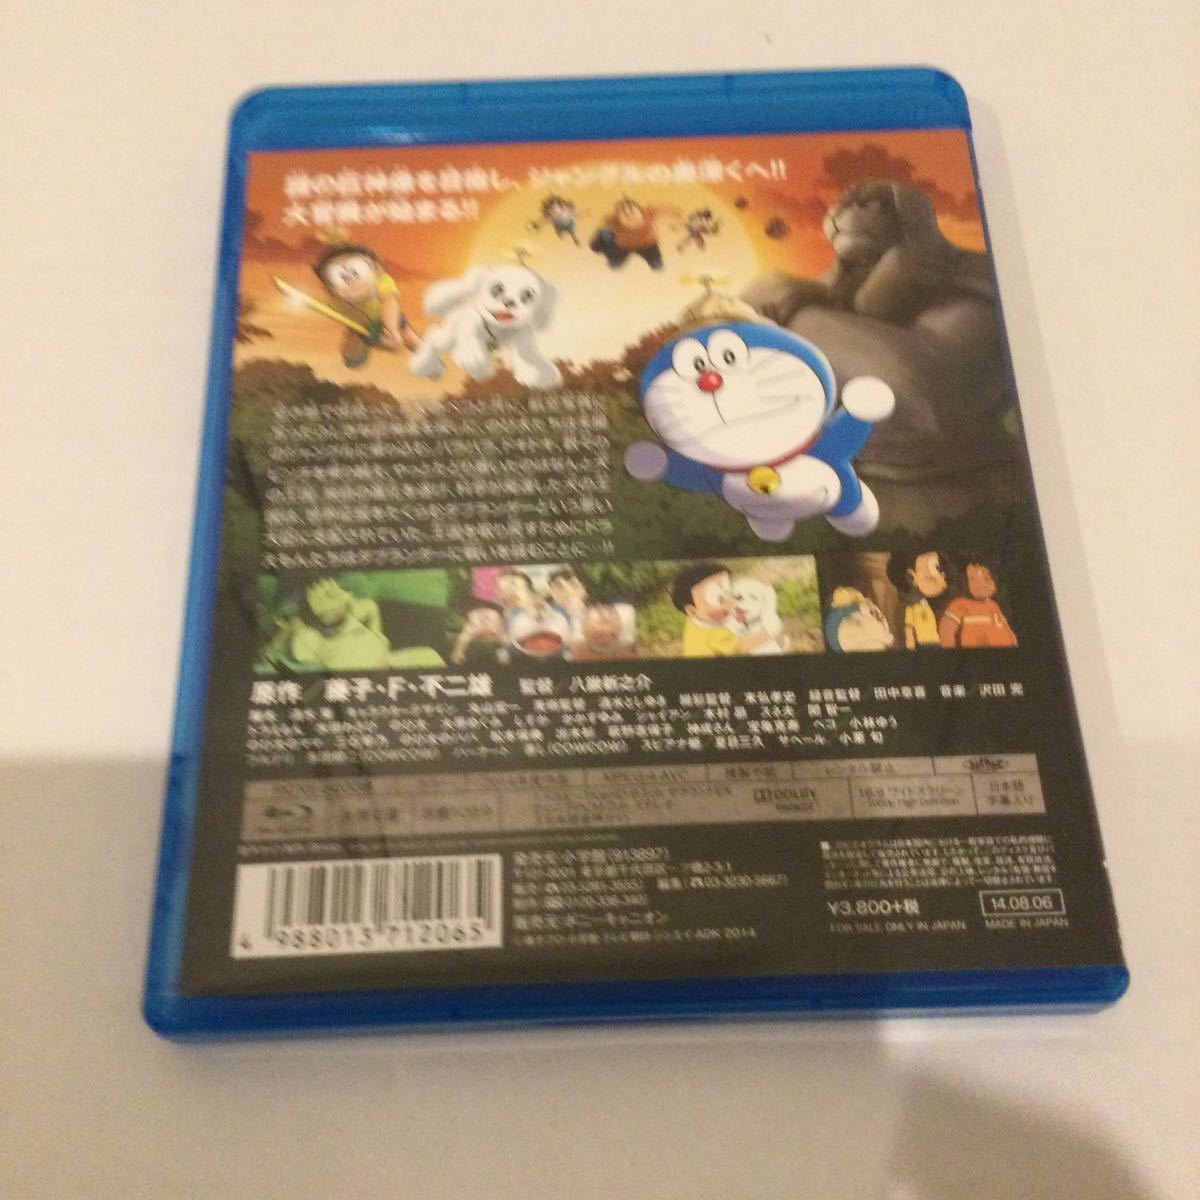 映画ドラえもん 新のび太の大魔境~ペコと5人の探検隊~ (Blu-ray Disc) ドラえもん